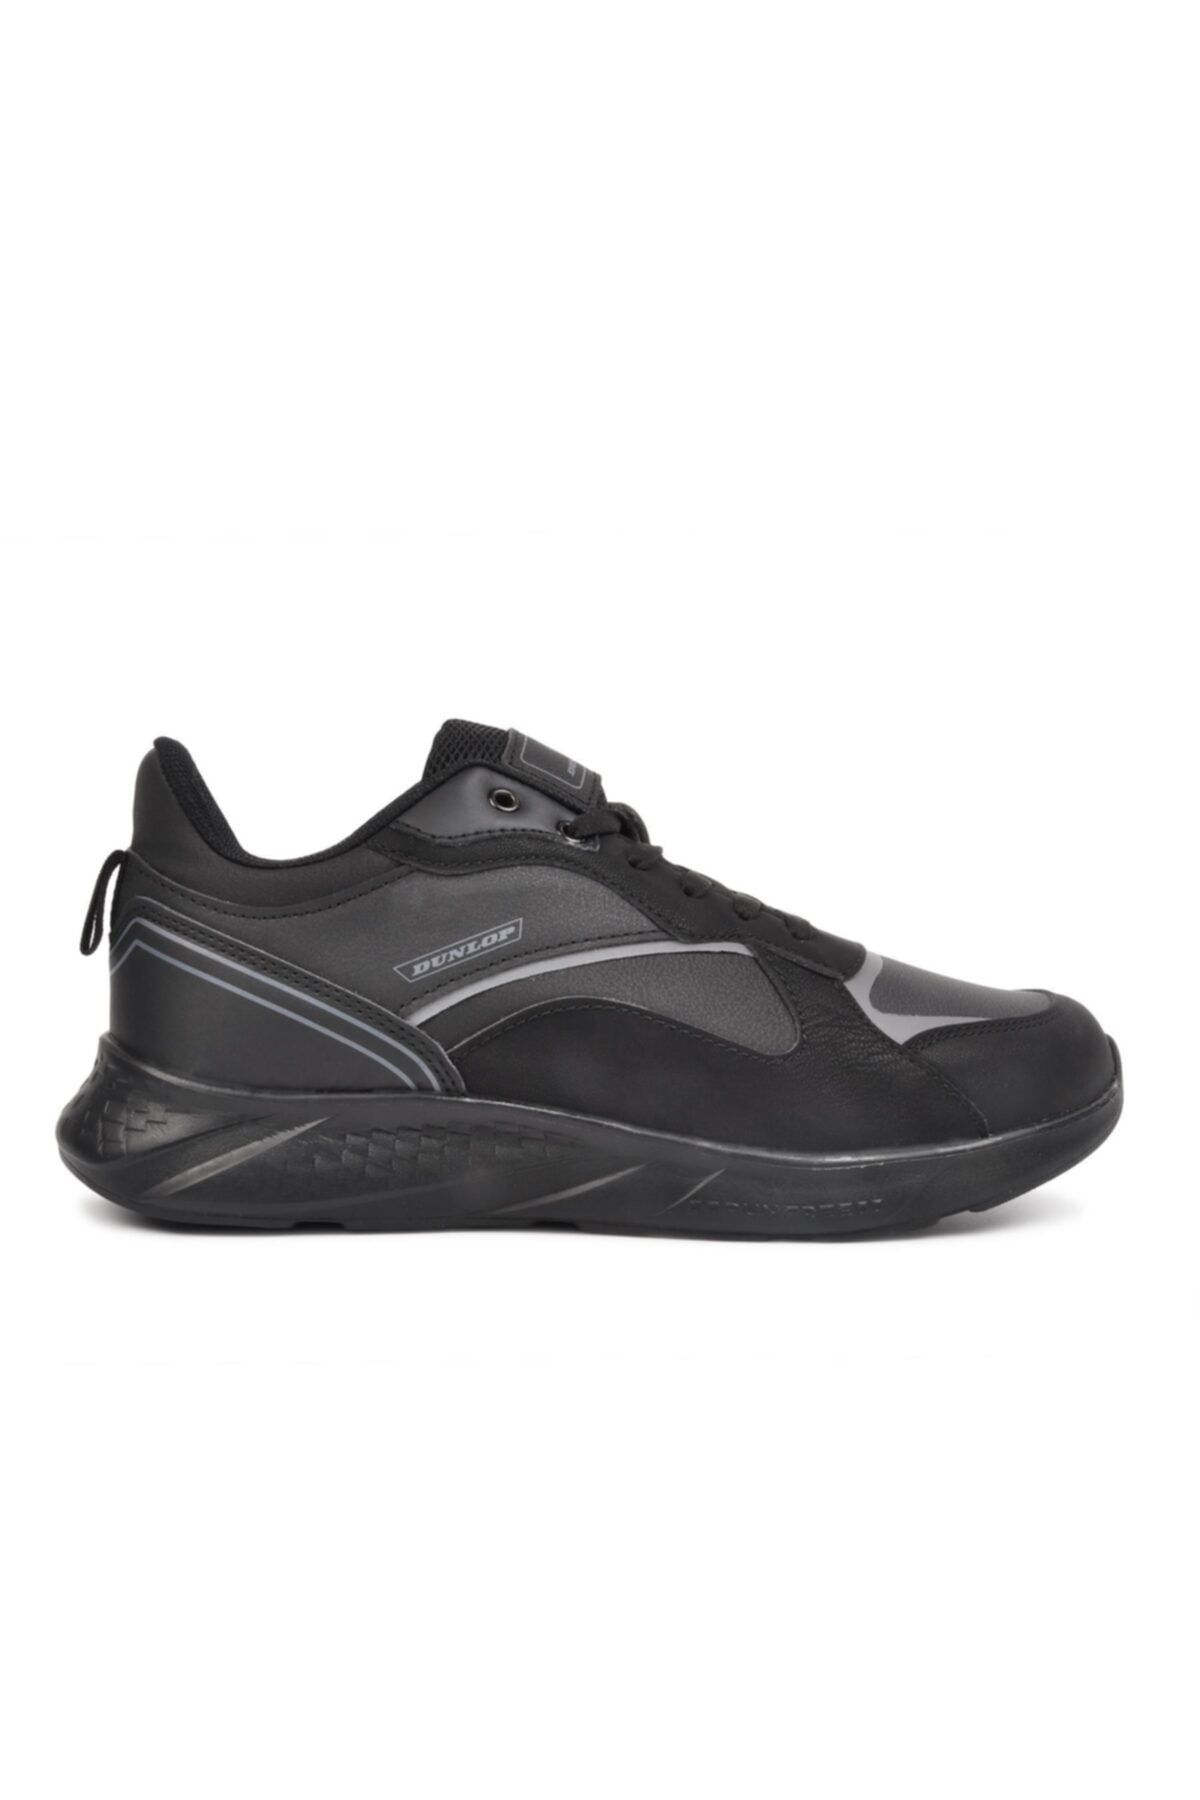 Dunlop Dnp-1511 Siyah Erkek Hafif Yürüyüş Ayakkabısı